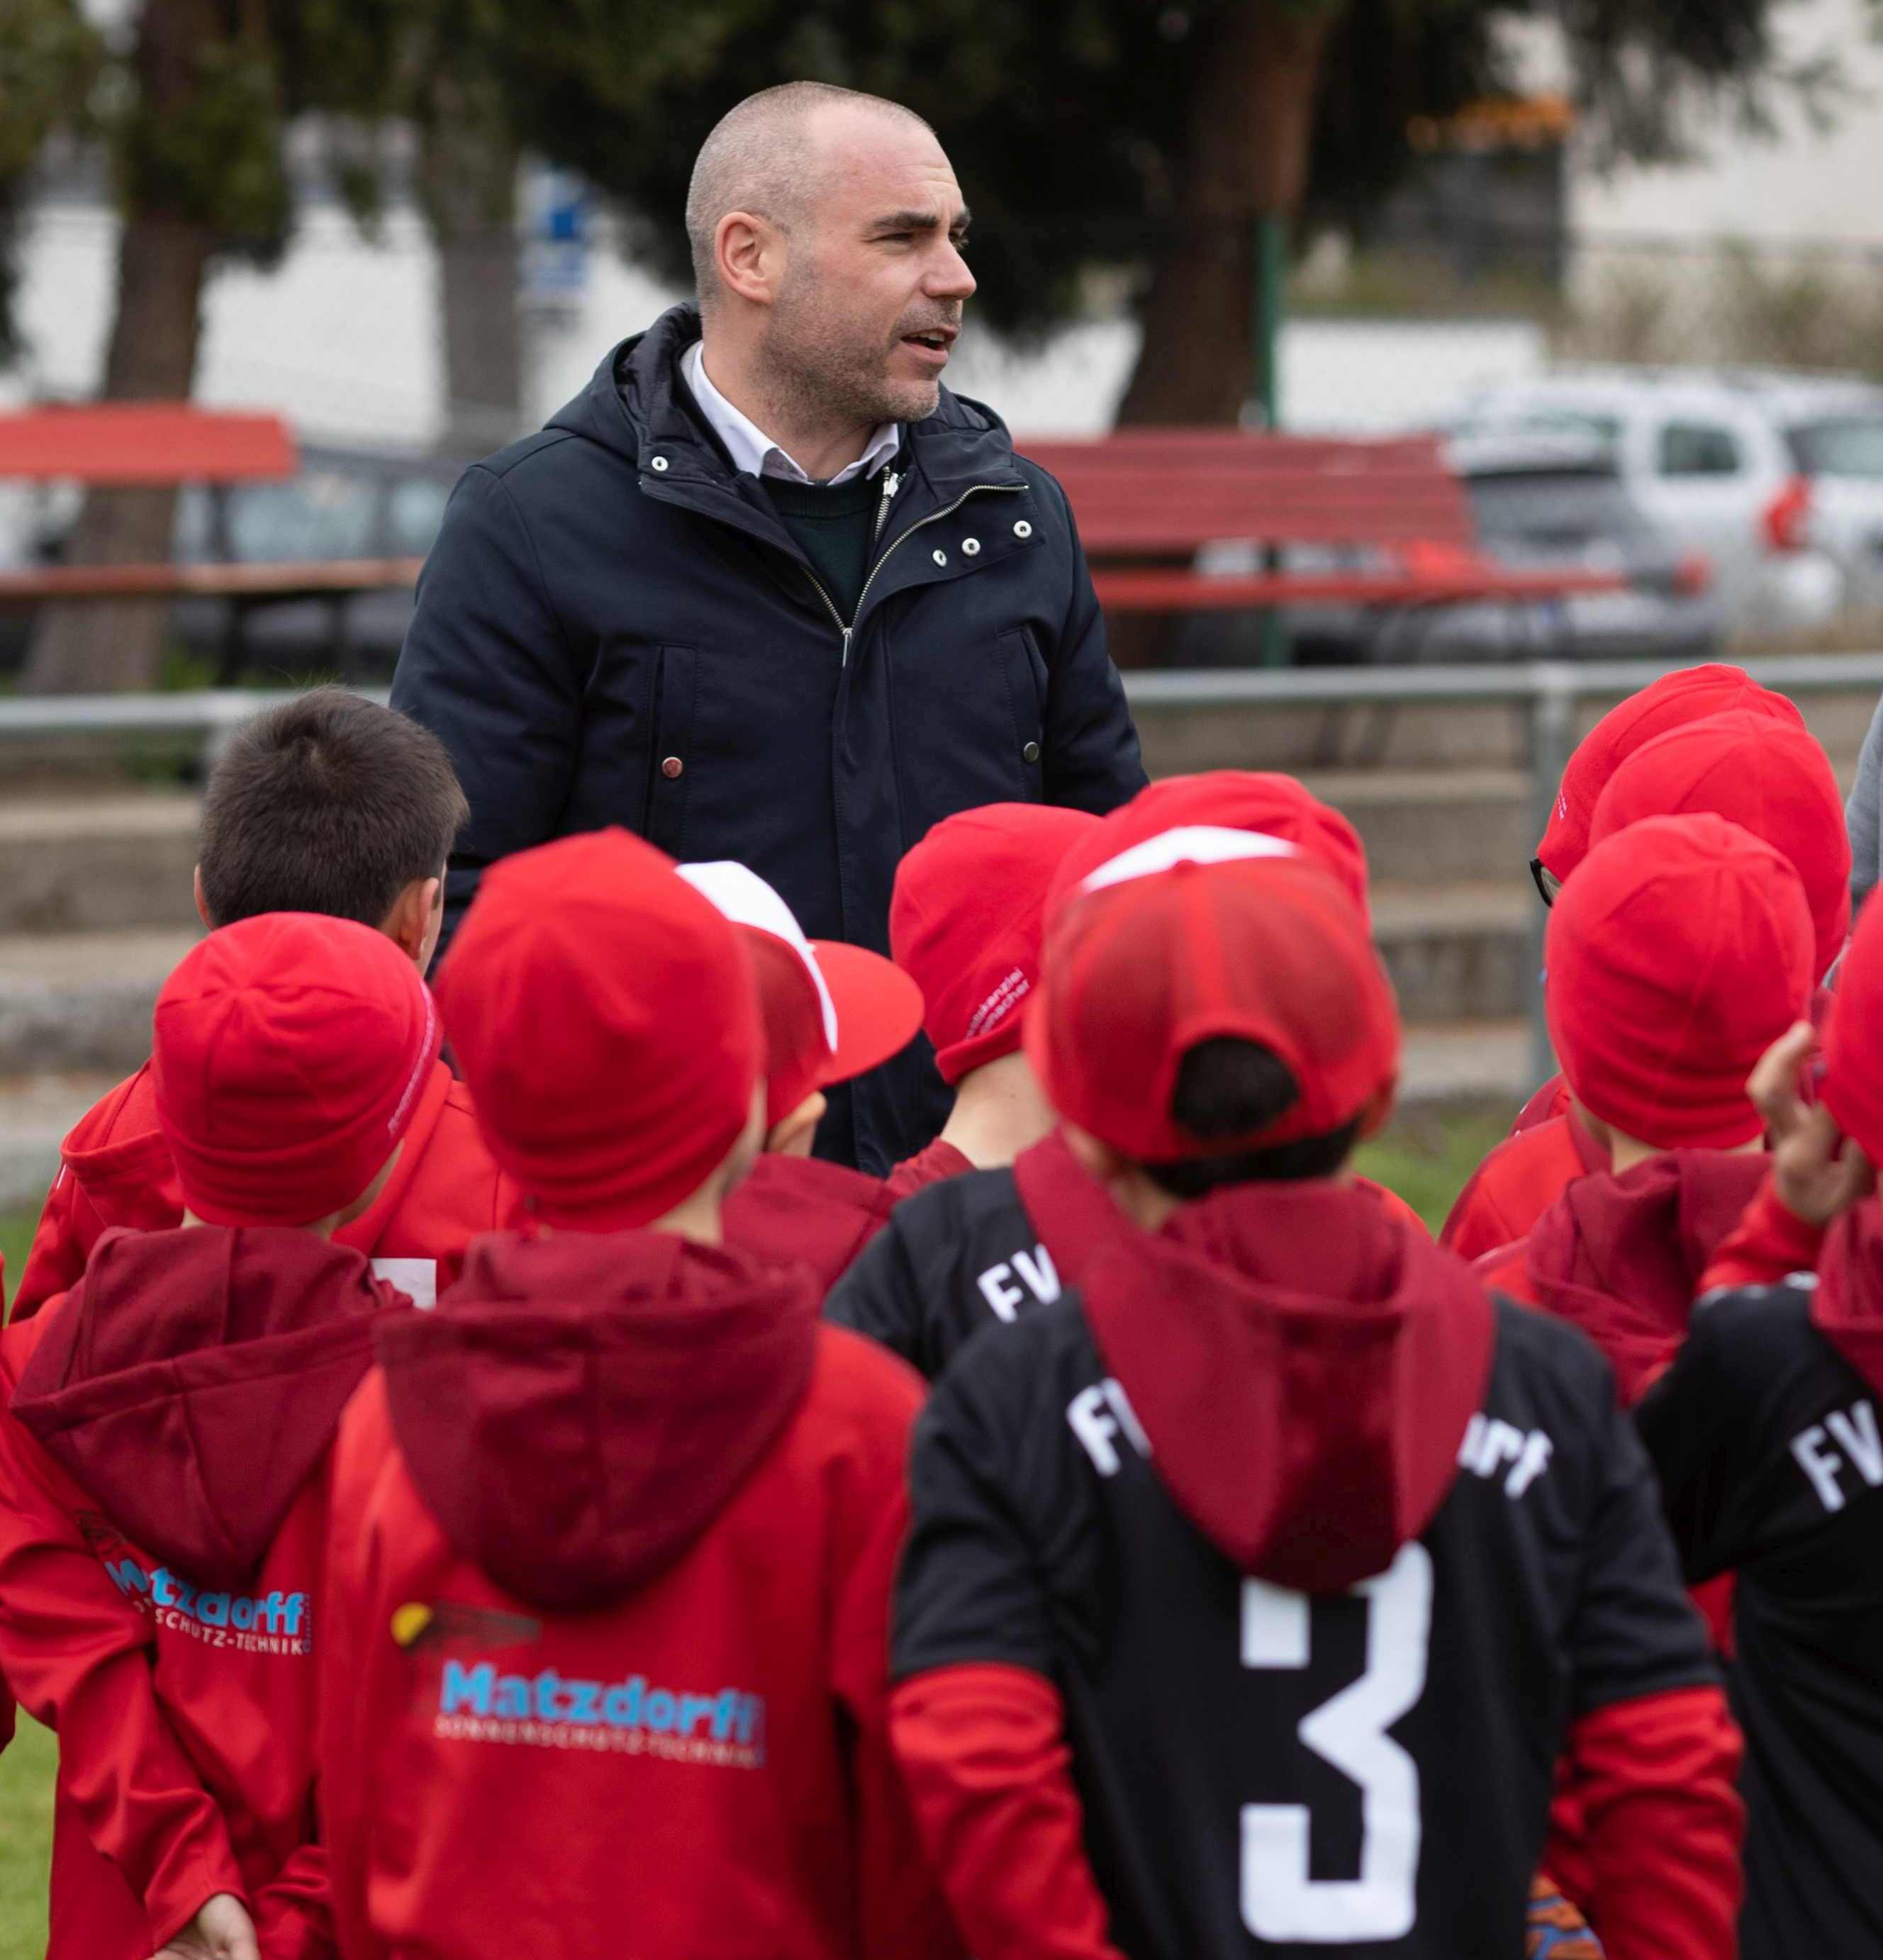 Bürgermeister Christian Eheim beim Training des Jugendfußballvereins Graben-Neudorf.